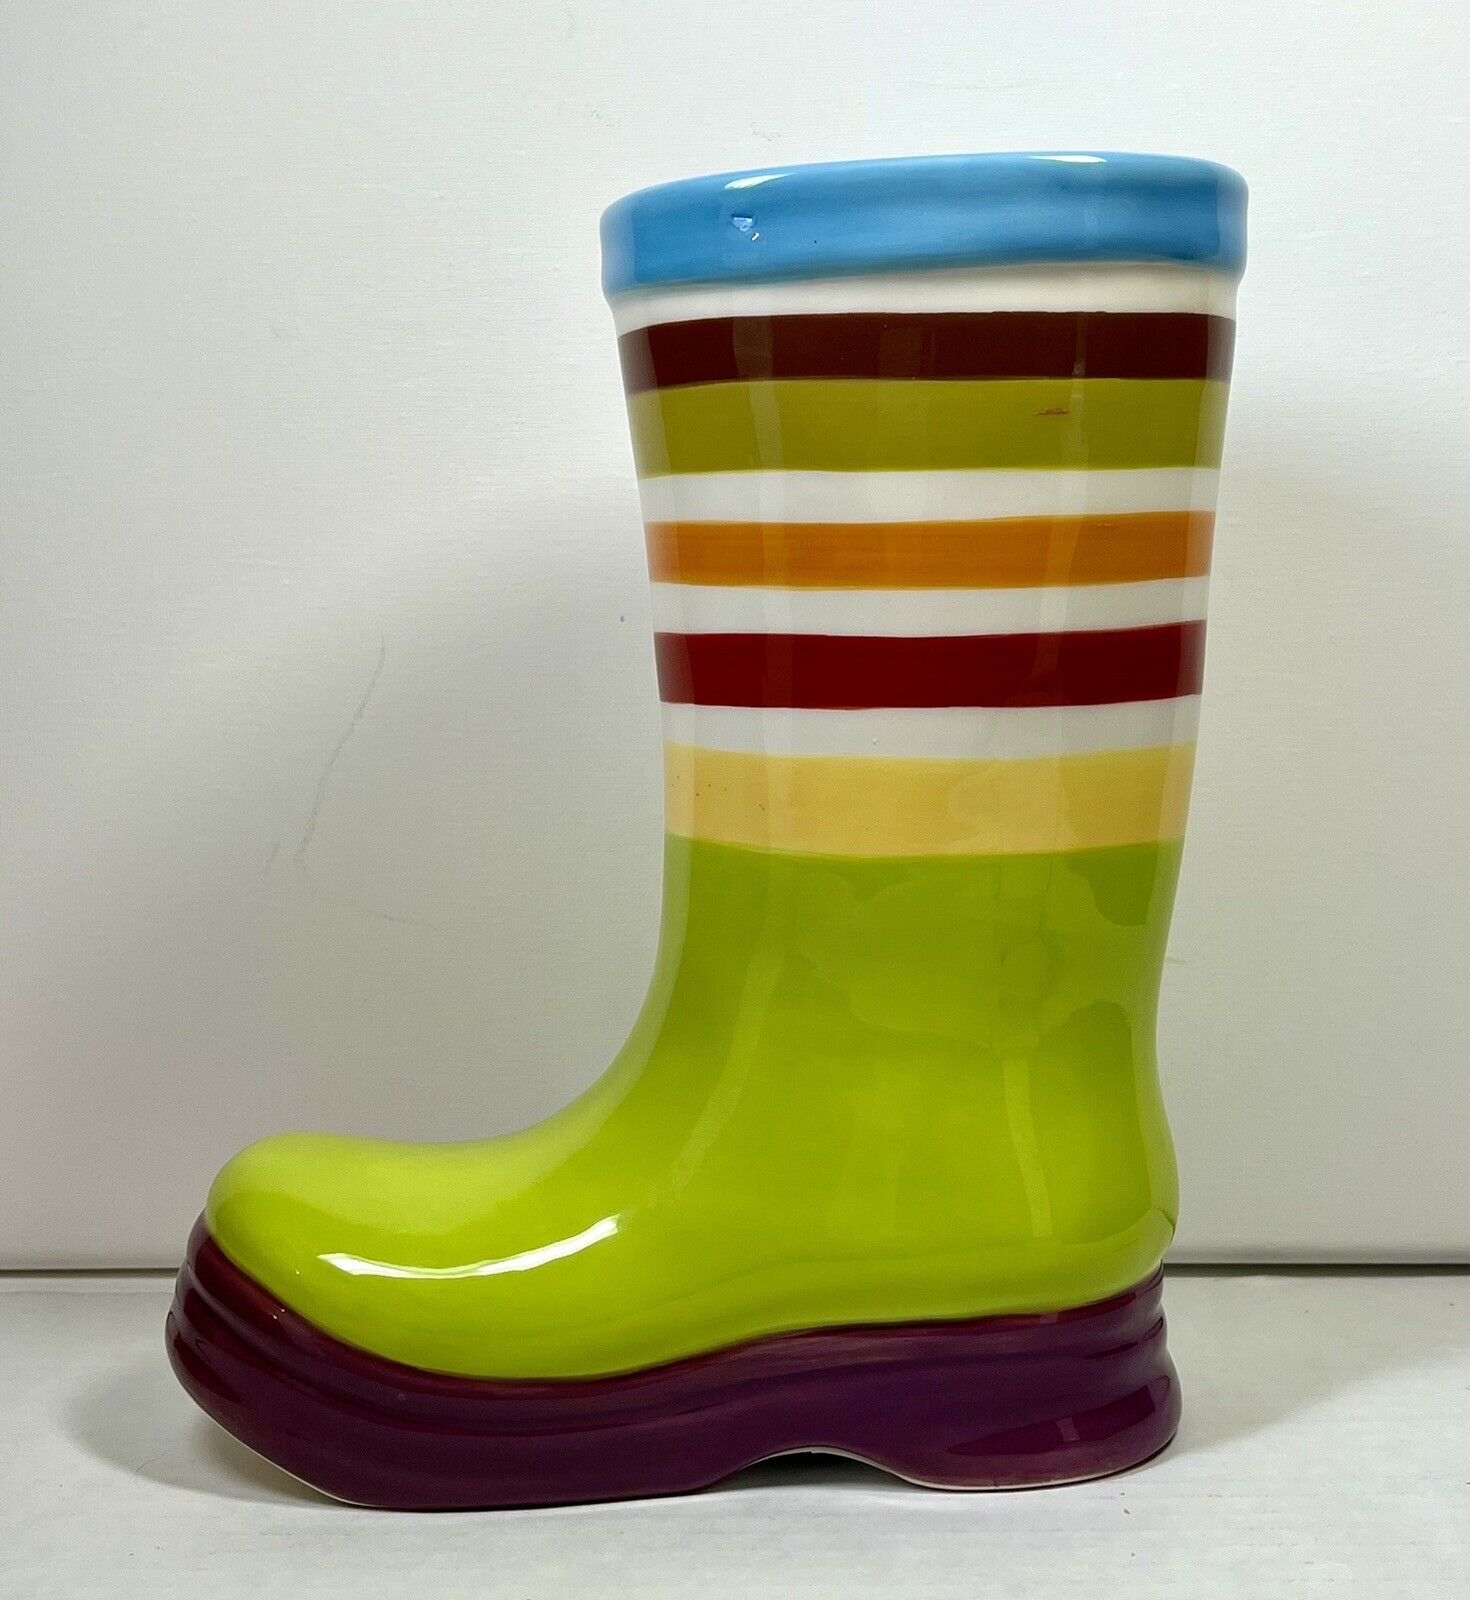 Colorful Ceramic Rainboot Vase Or Planter. So Cute